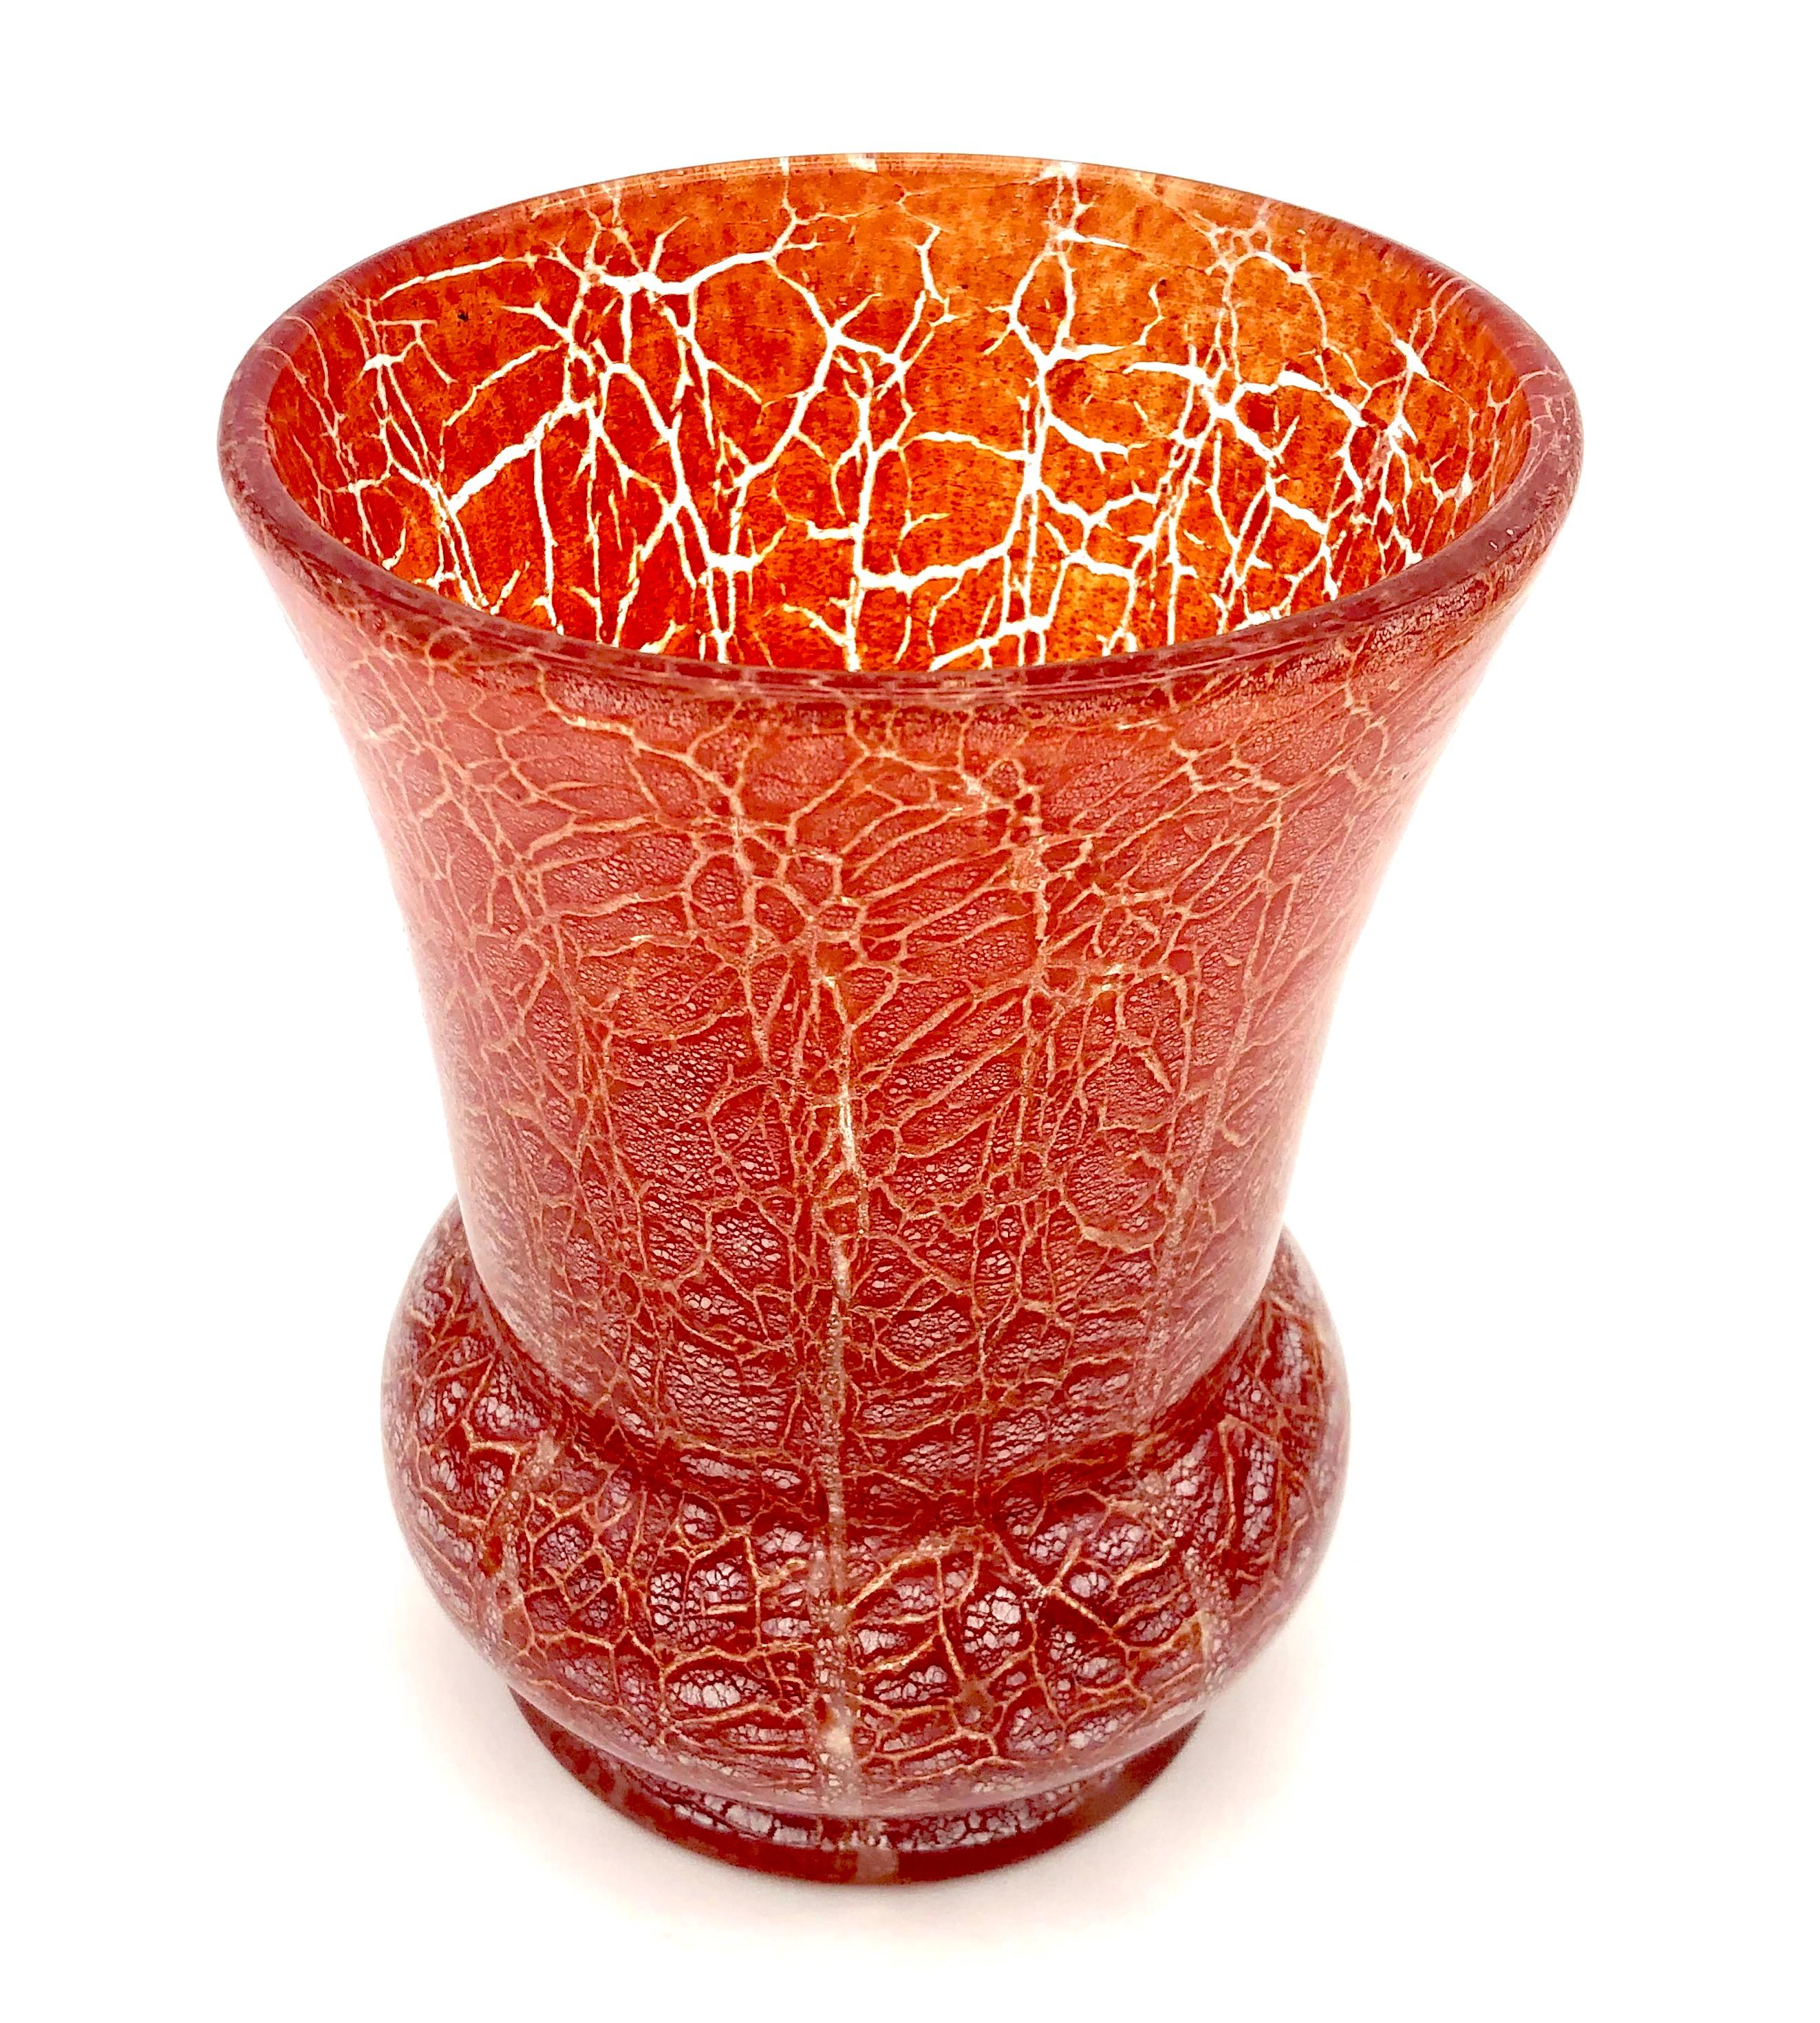 Ce vase Art déco a été conçu par Karl Wiedmann (1905-1992) pour WMF en 1930 ca.  C'est l'un des verres d'art Ikora. Selon Xenia Riemann dans son article sur WMF dans le catalogue 